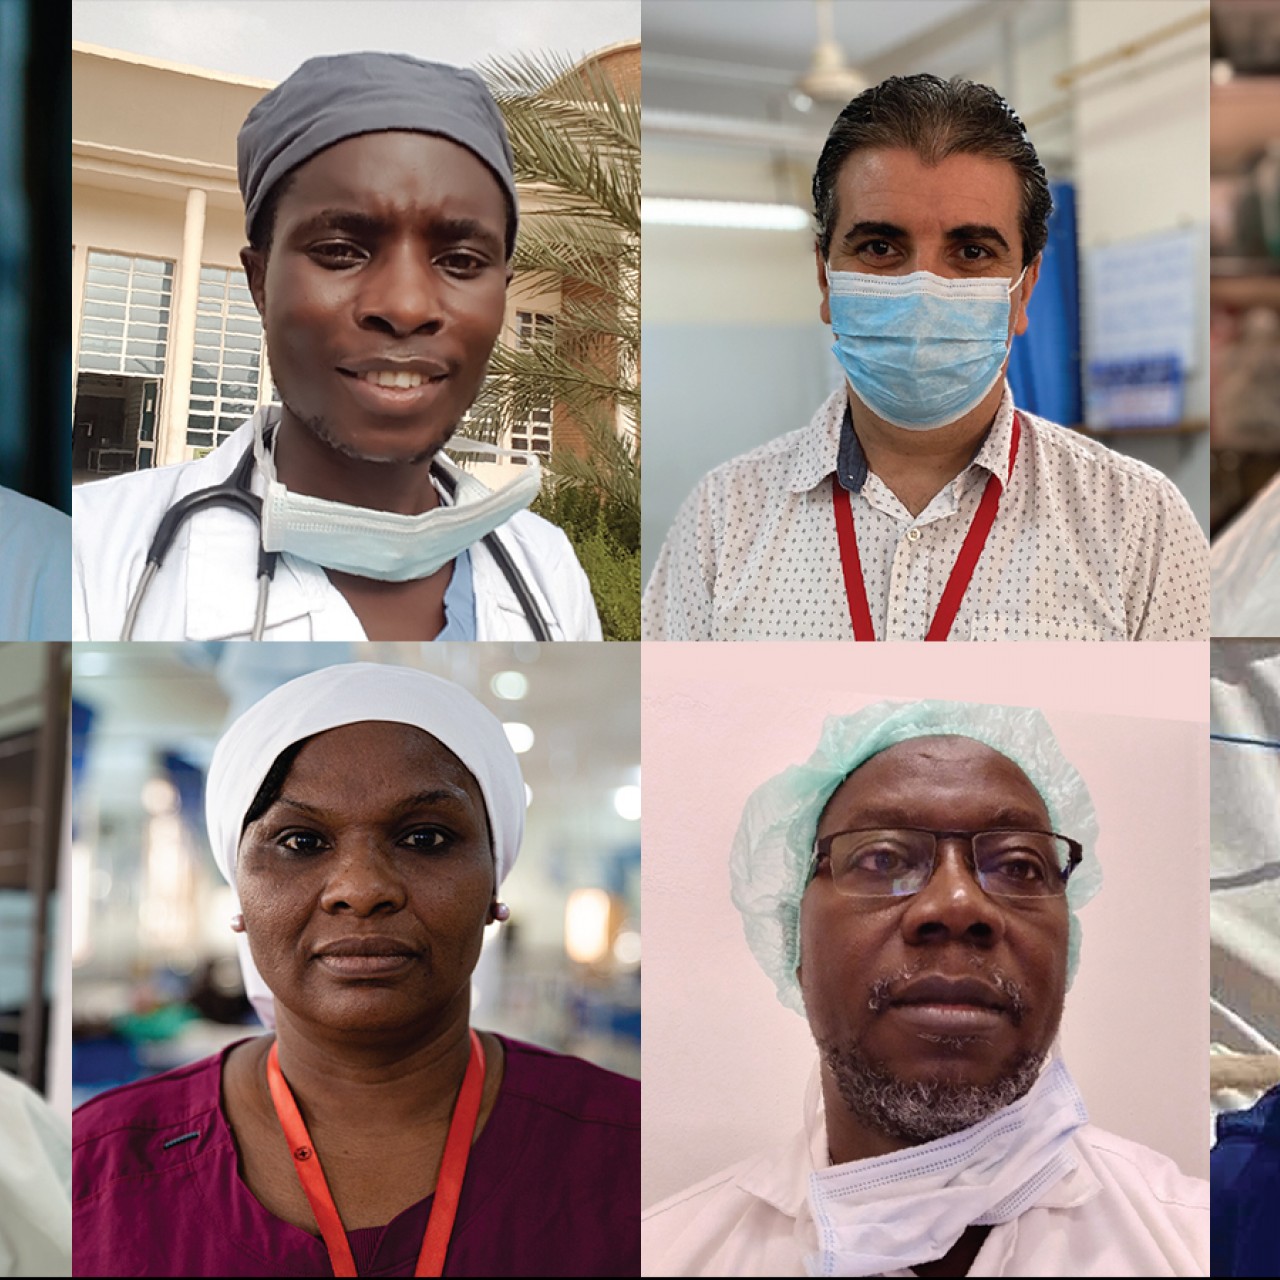 اليوم الدولي للممرضين والممرضات: ثناء مستحق وحماية واجبة للتمريض في أزمة  كوفيد-19 | اللجنة الدولية للصليب الأحمر